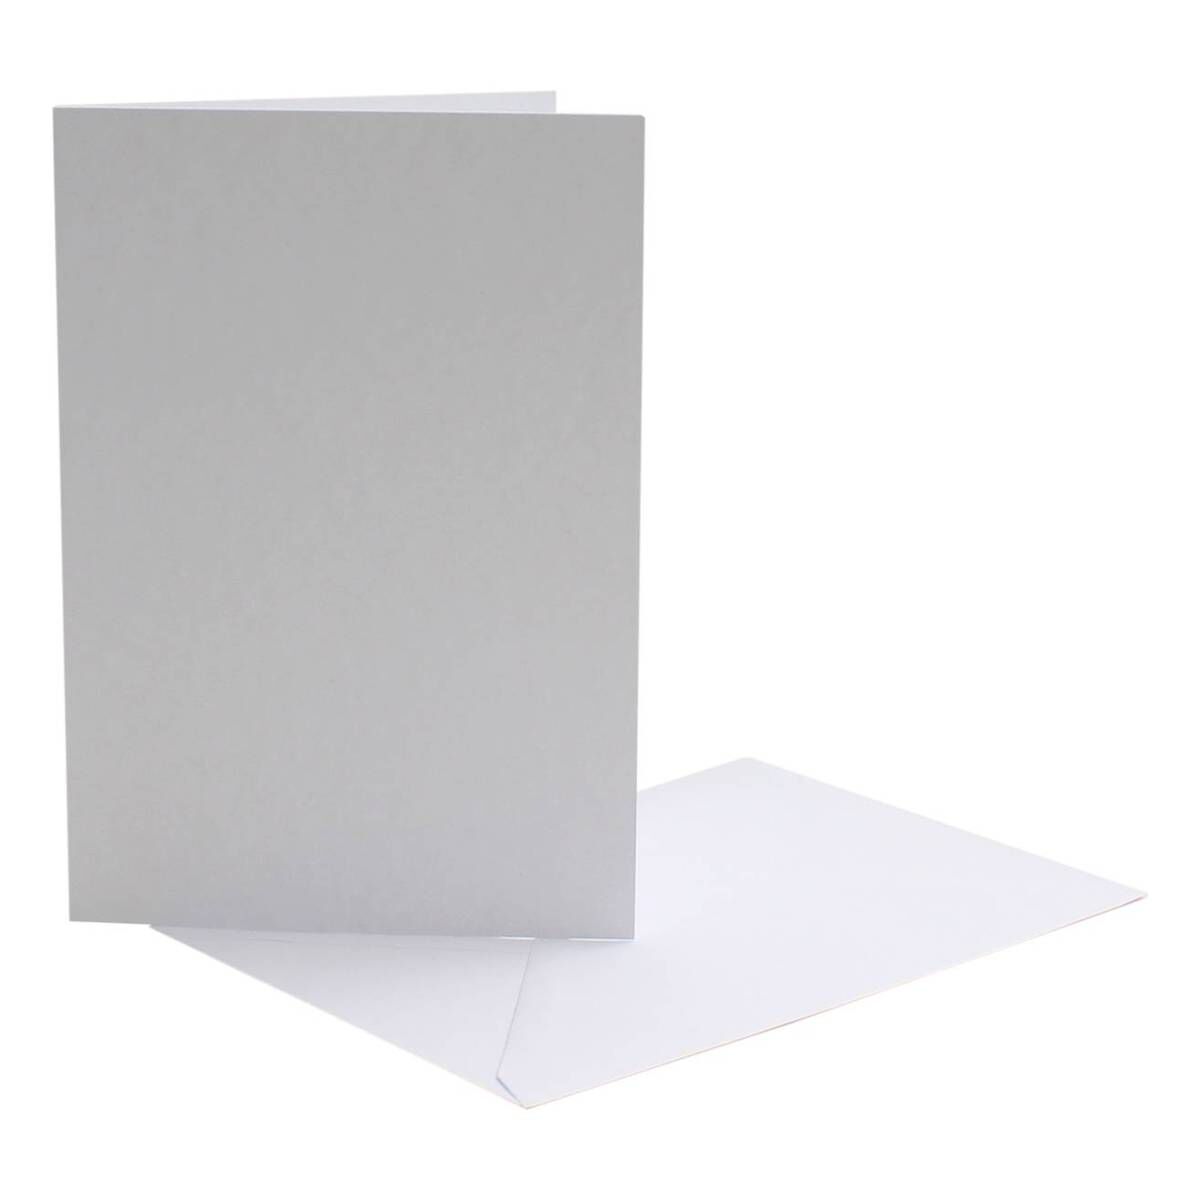 10 x 5x7 White Card Blanks With White Envelopes 